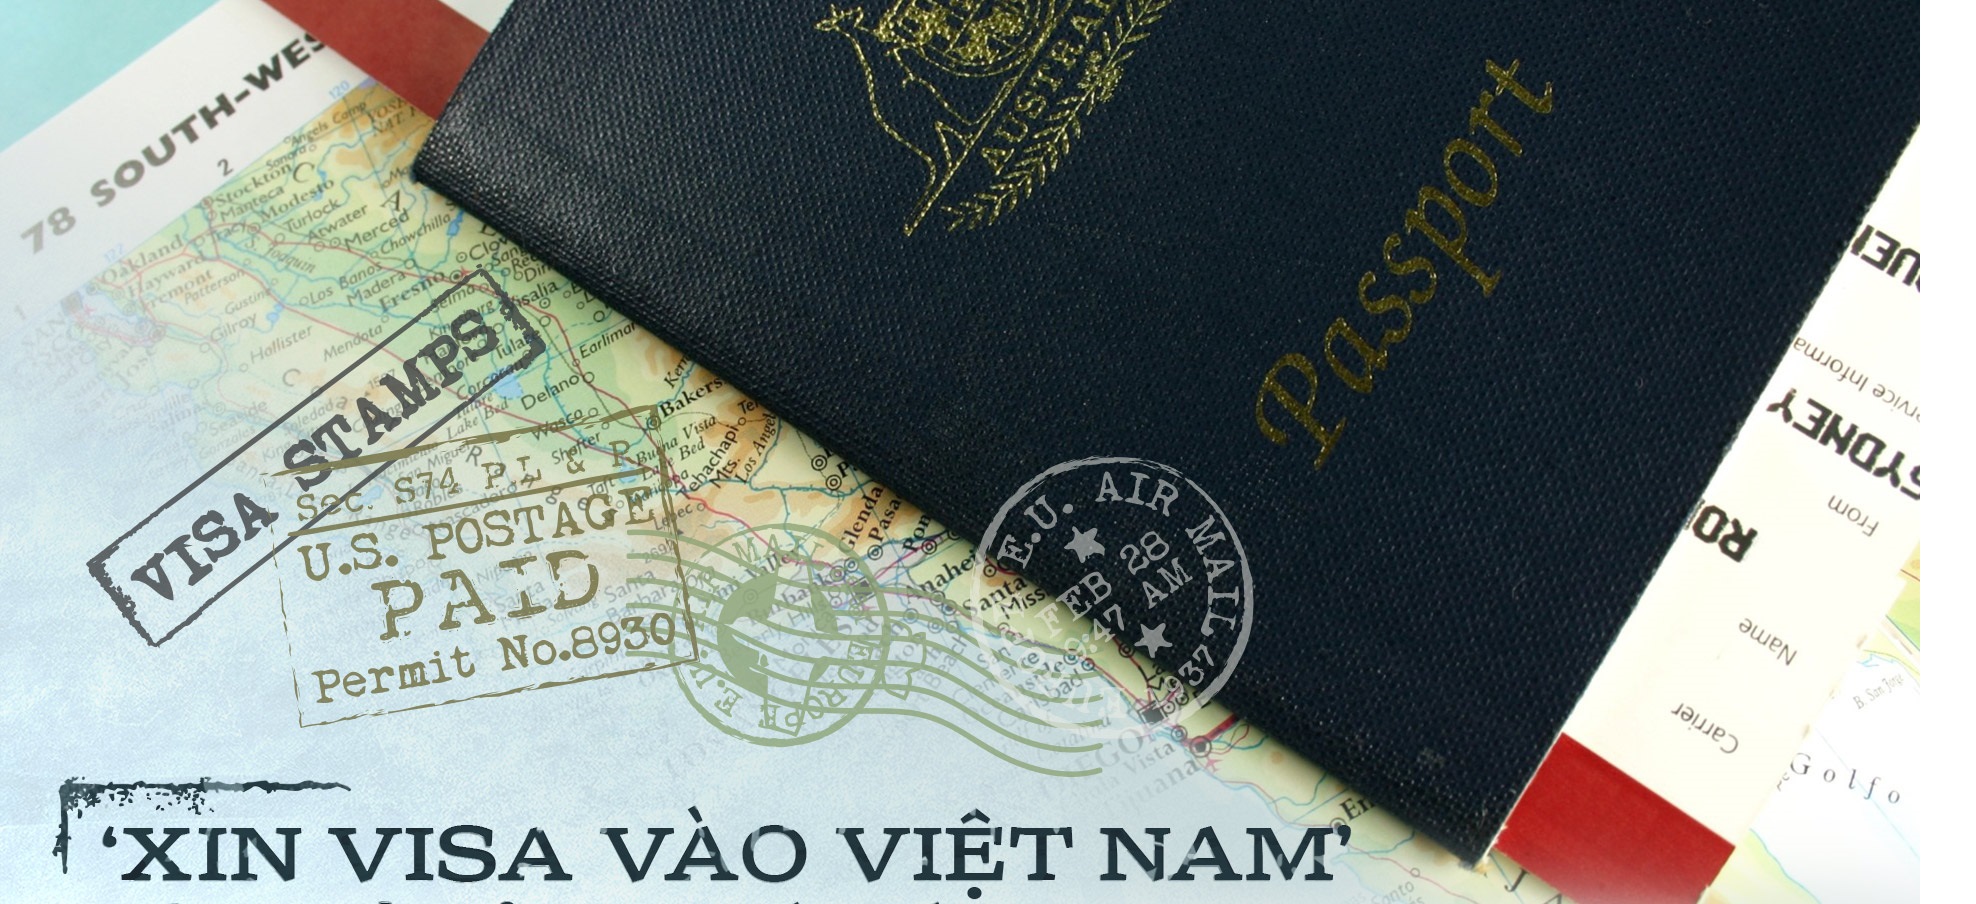 Xin visa cho người nước ngoài vào Việt Nam